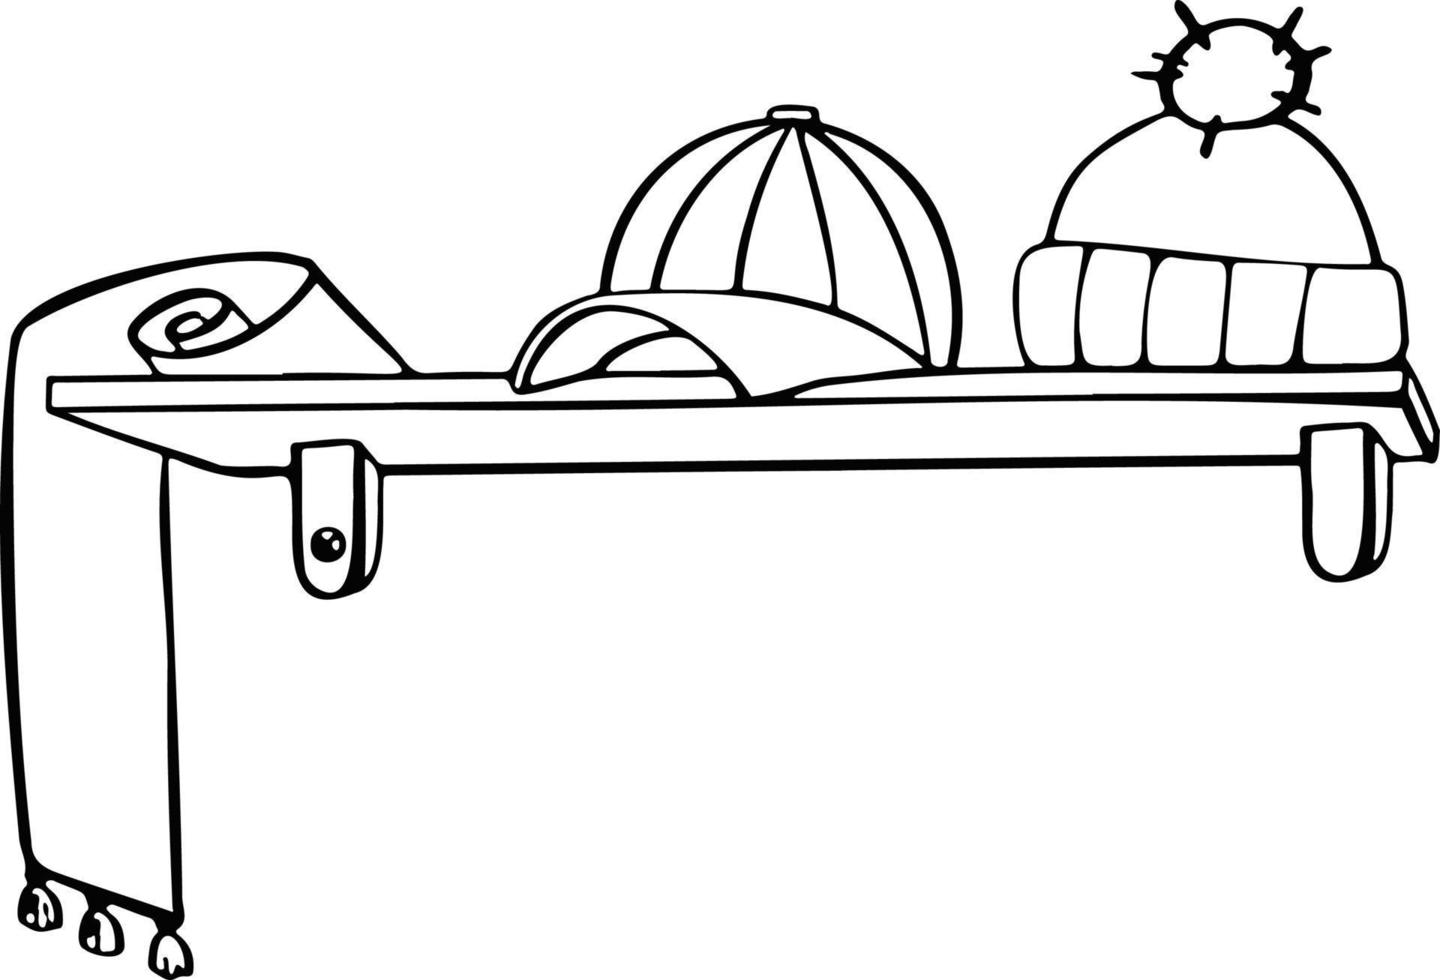 Line shelf for hats and scarves, symbol illustration sketch vector